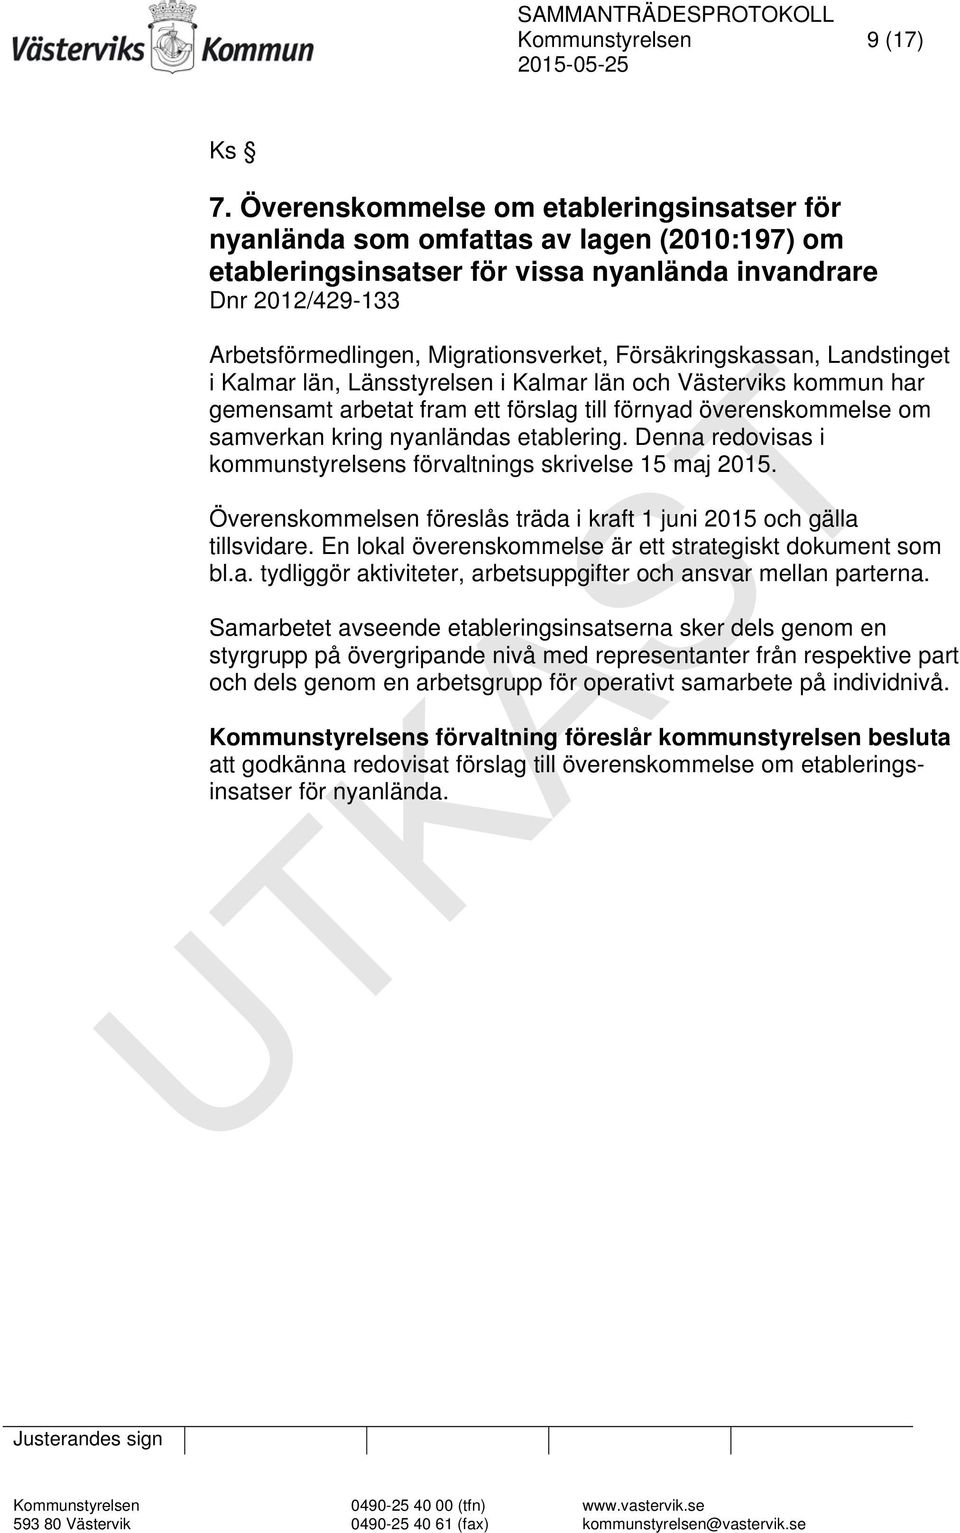 Försäkringskassan, Landstinget i Kalmar län, Länsstyrelsen i Kalmar län och Västerviks kommun har gemensamt arbetat fram ett förslag till förnyad överenskommelse om samverkan kring nyanländas